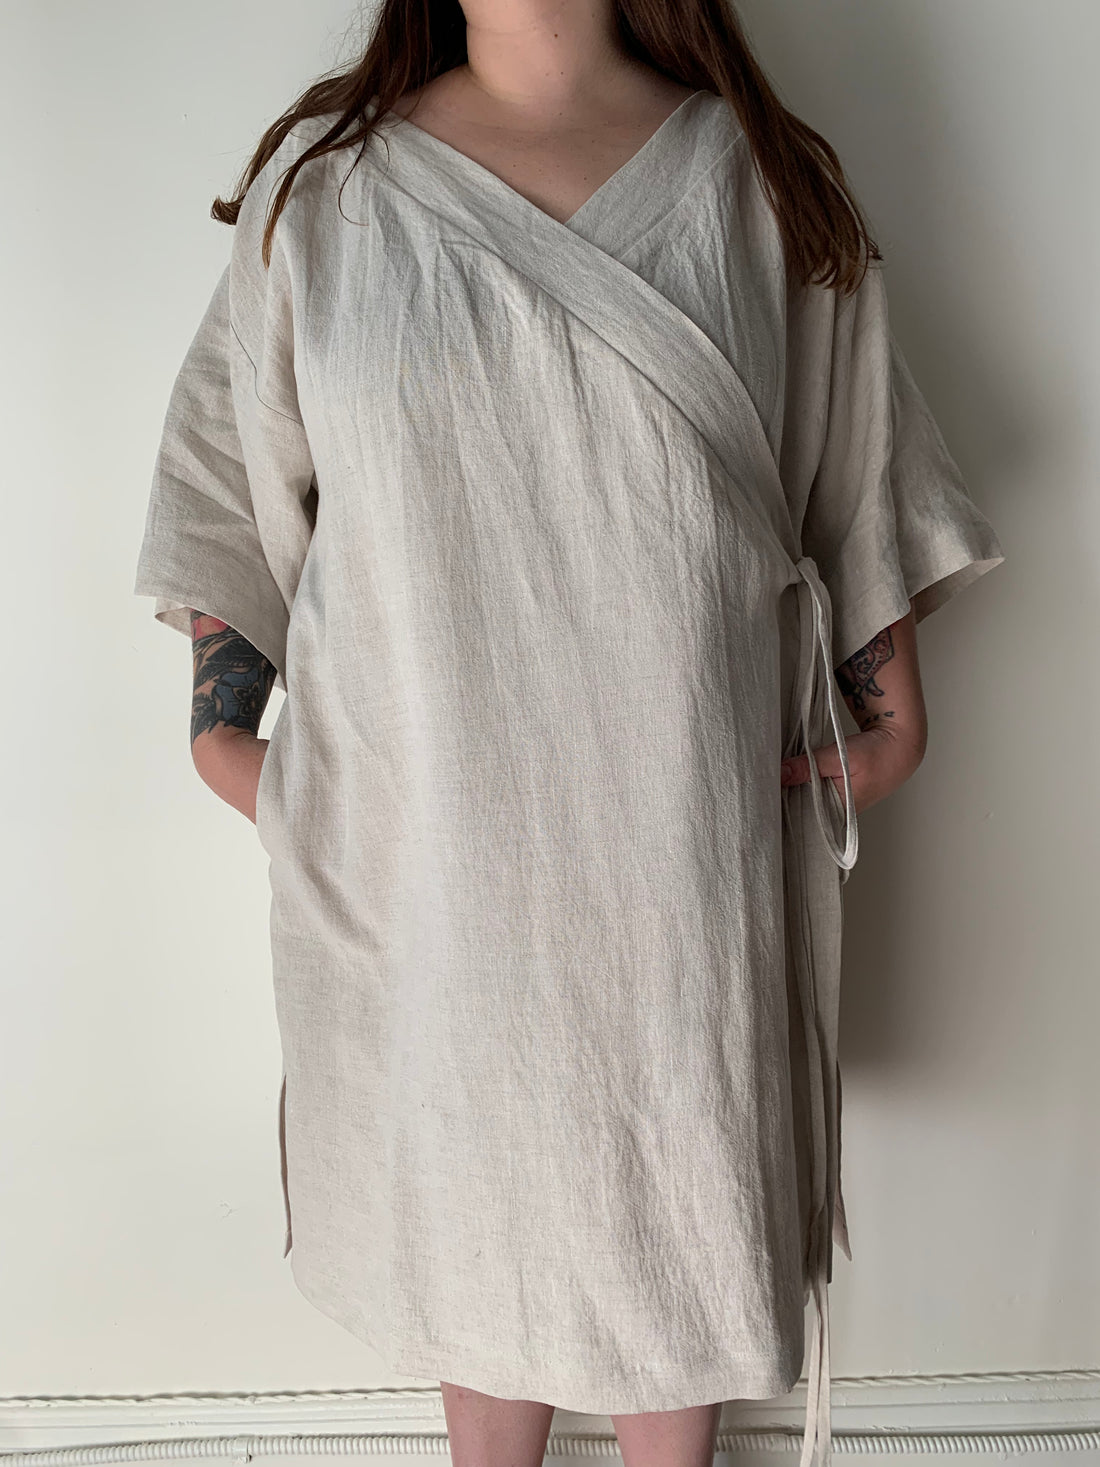 Robe croisée en lin No2216w